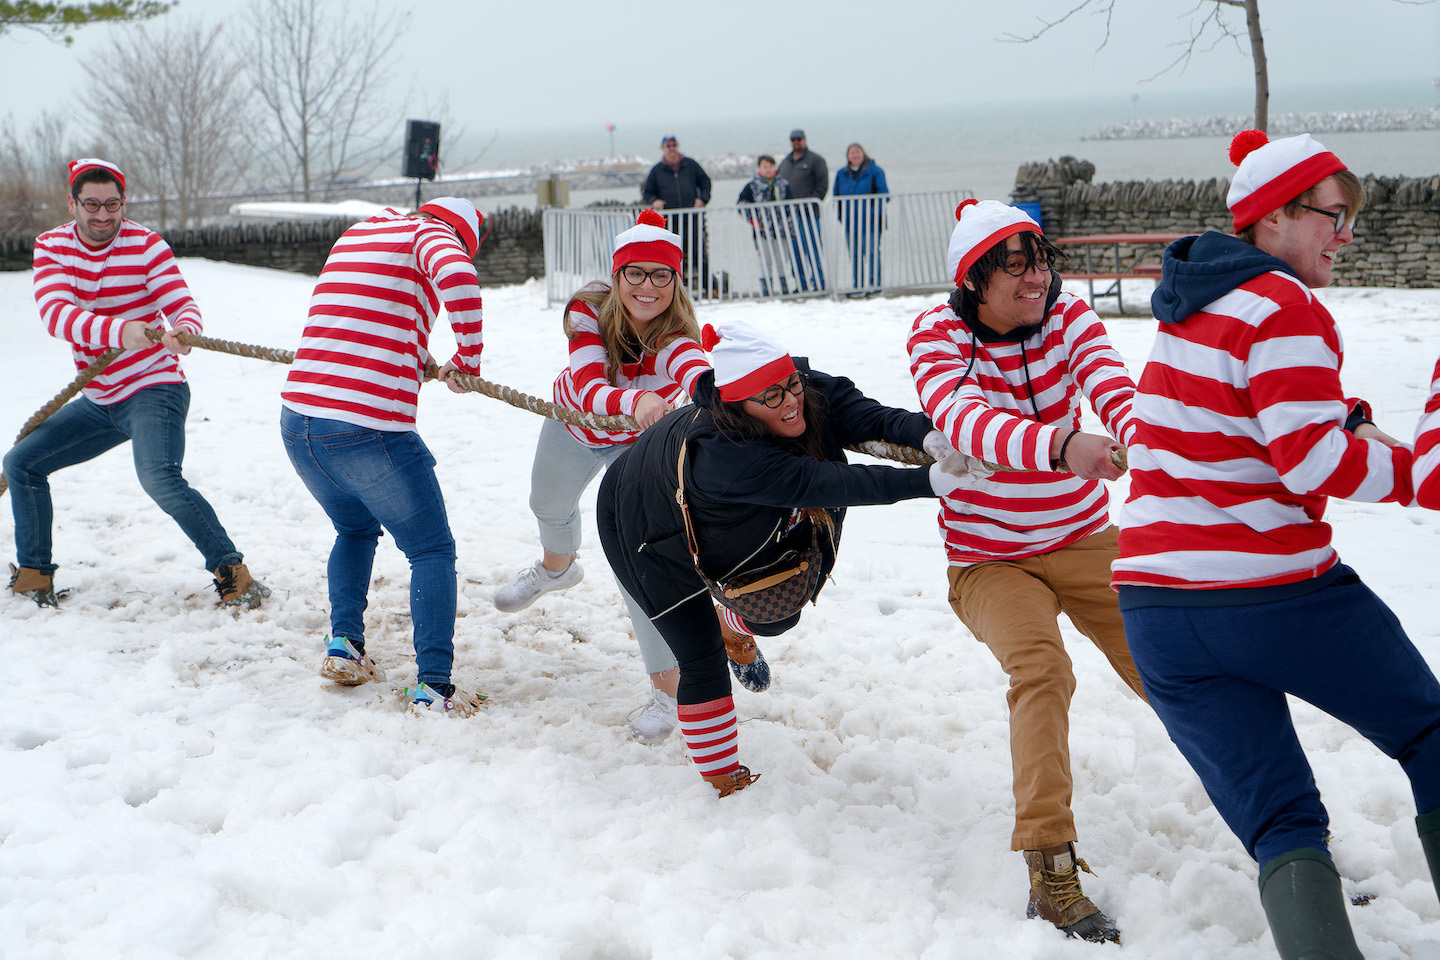 The `Waldos` having fun in the tug-of-war.